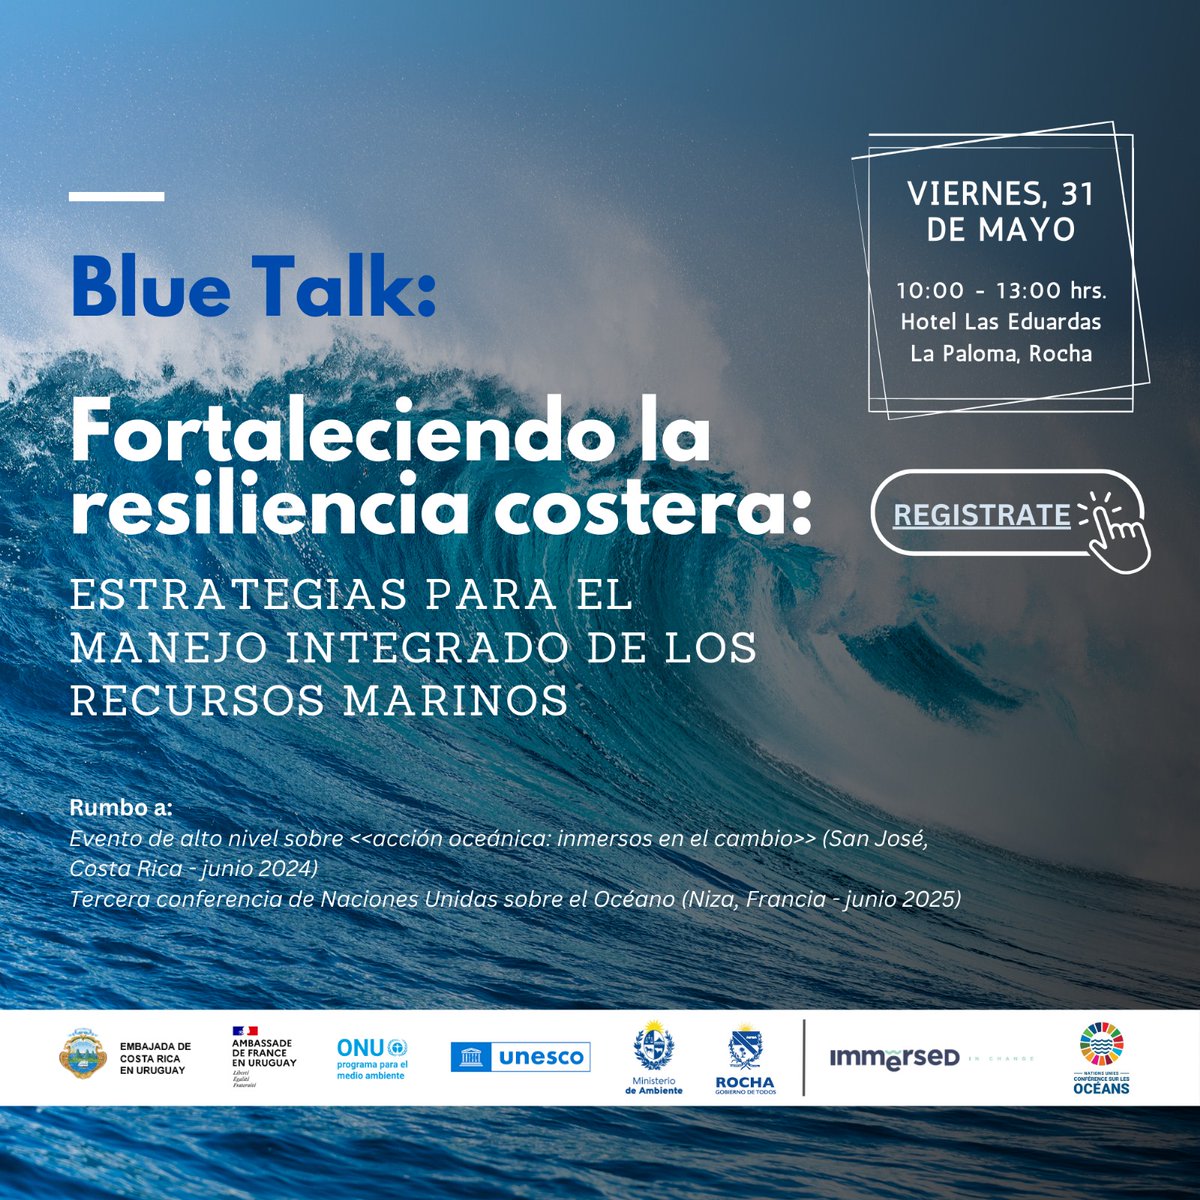 La Embajada de 🇫🇷, la Embajada 🇨🇷 y el Programa de las Naciones Unidas para el Medio Ambiente (PNUMA) en Uruguay, invitan al evento de discusión y de reflexión, “Blue Talk: Fortaleciendo la resiliencia costera: Estrategias para el manejo integrado de los recursos marinos”